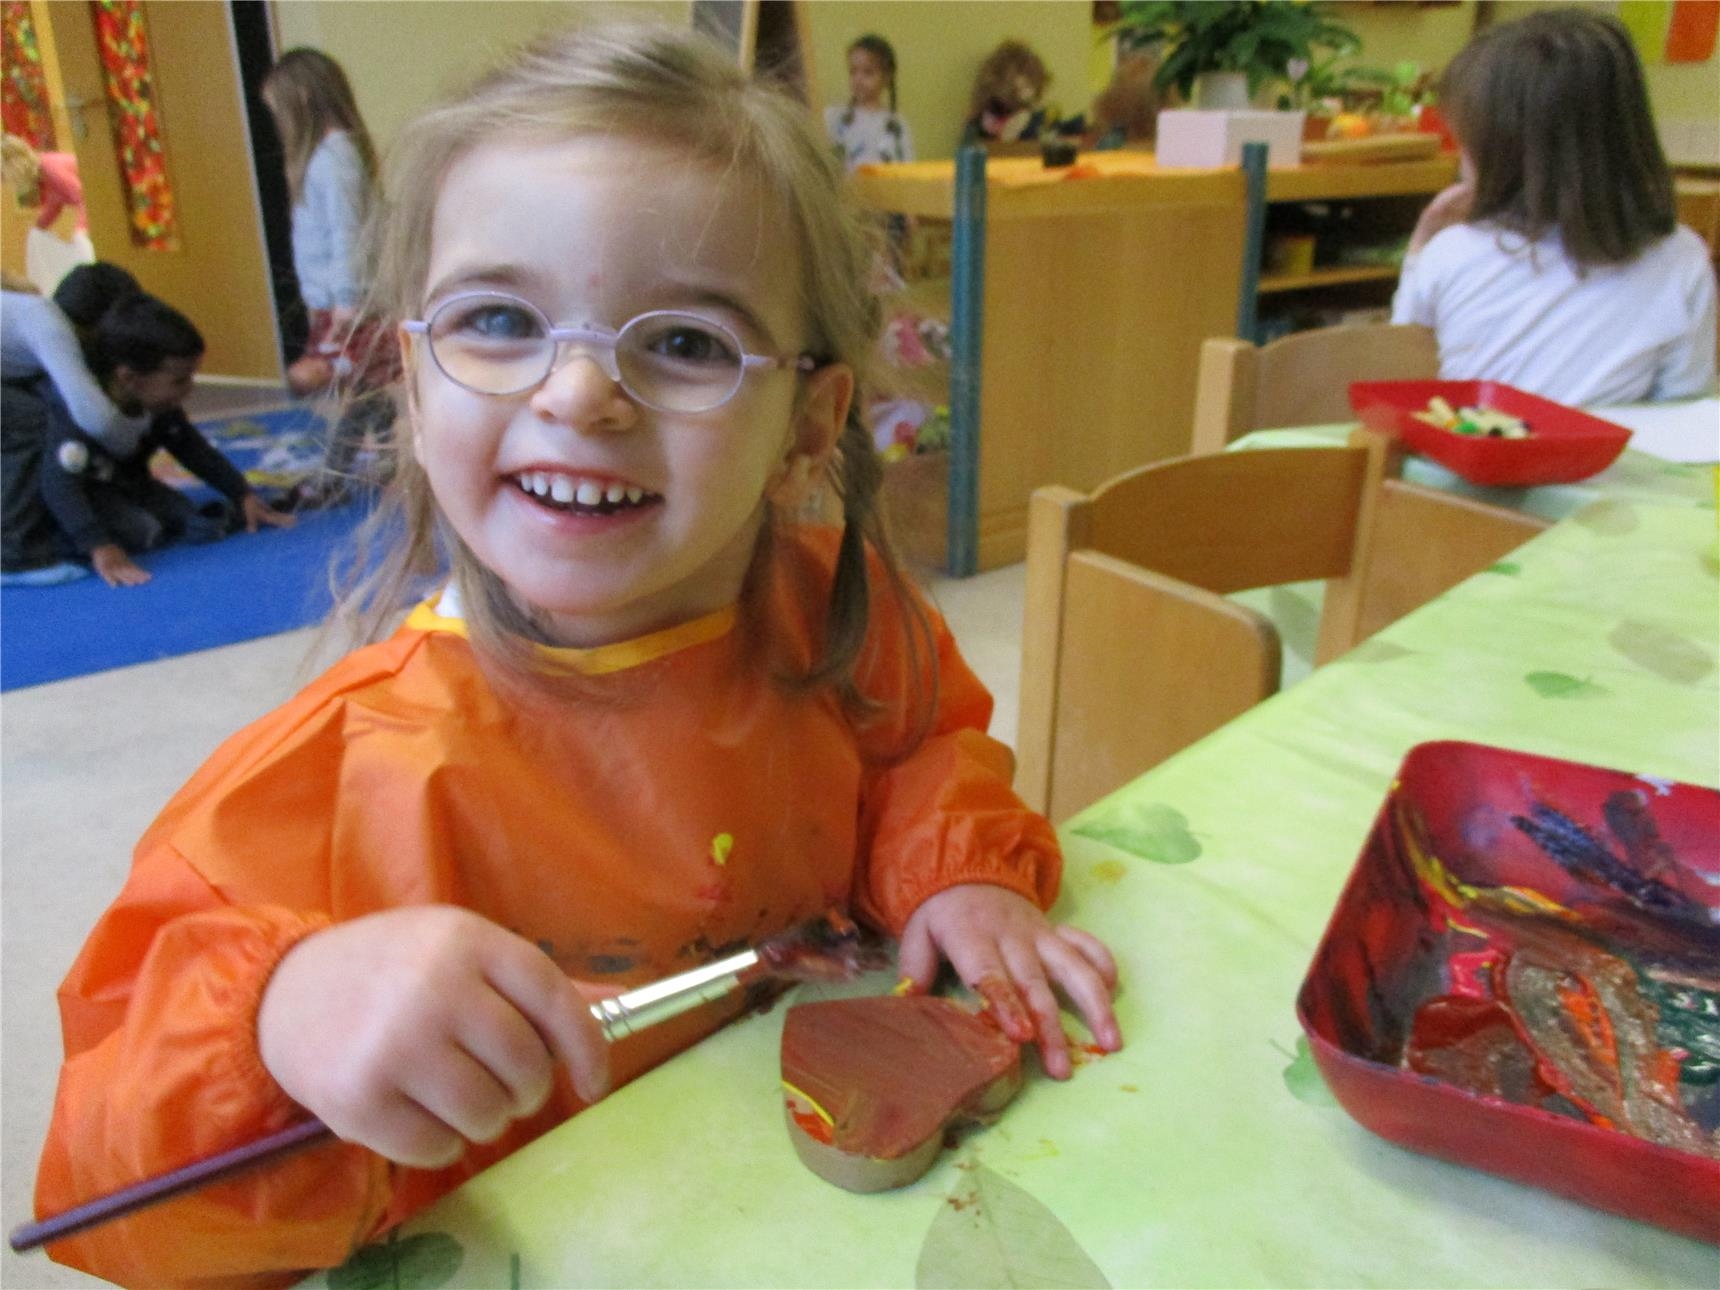 : Ein Mädchen bemalt ein Pappherz mit Pinsel und Farbe; im Hintergrund: spielende Kinder  ( Caritasverband Trier e. V.)